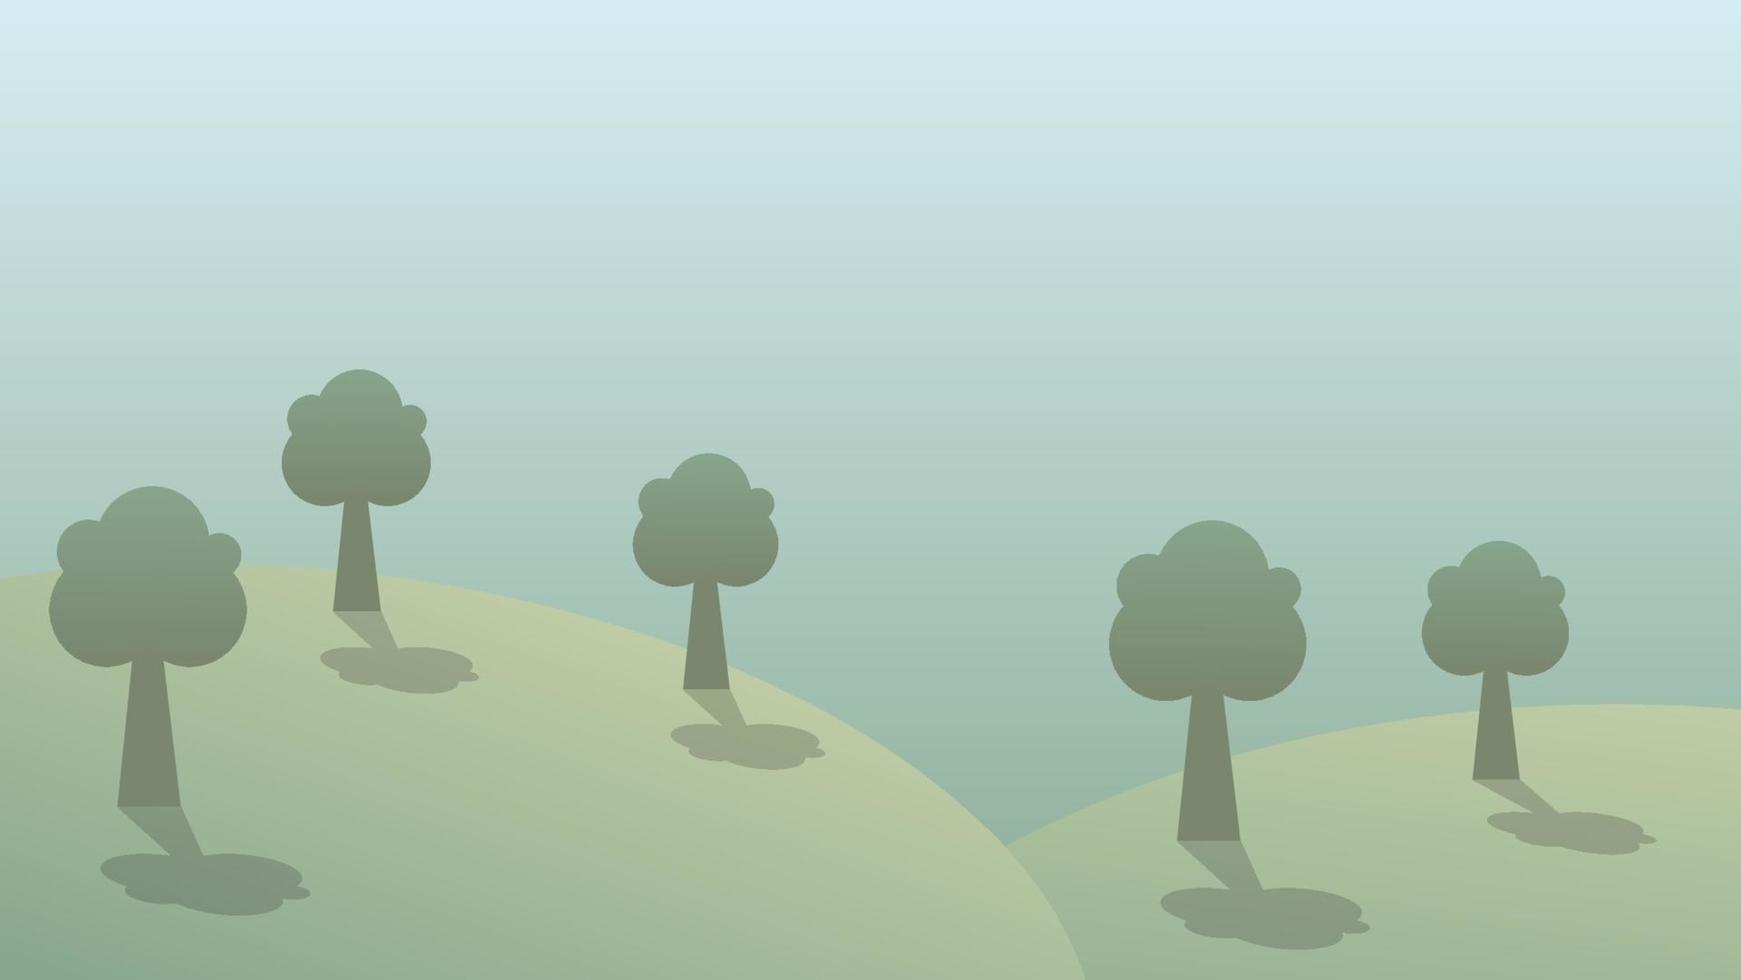 scène de dessin animé de paysage avec colline verte et arbre vecteur